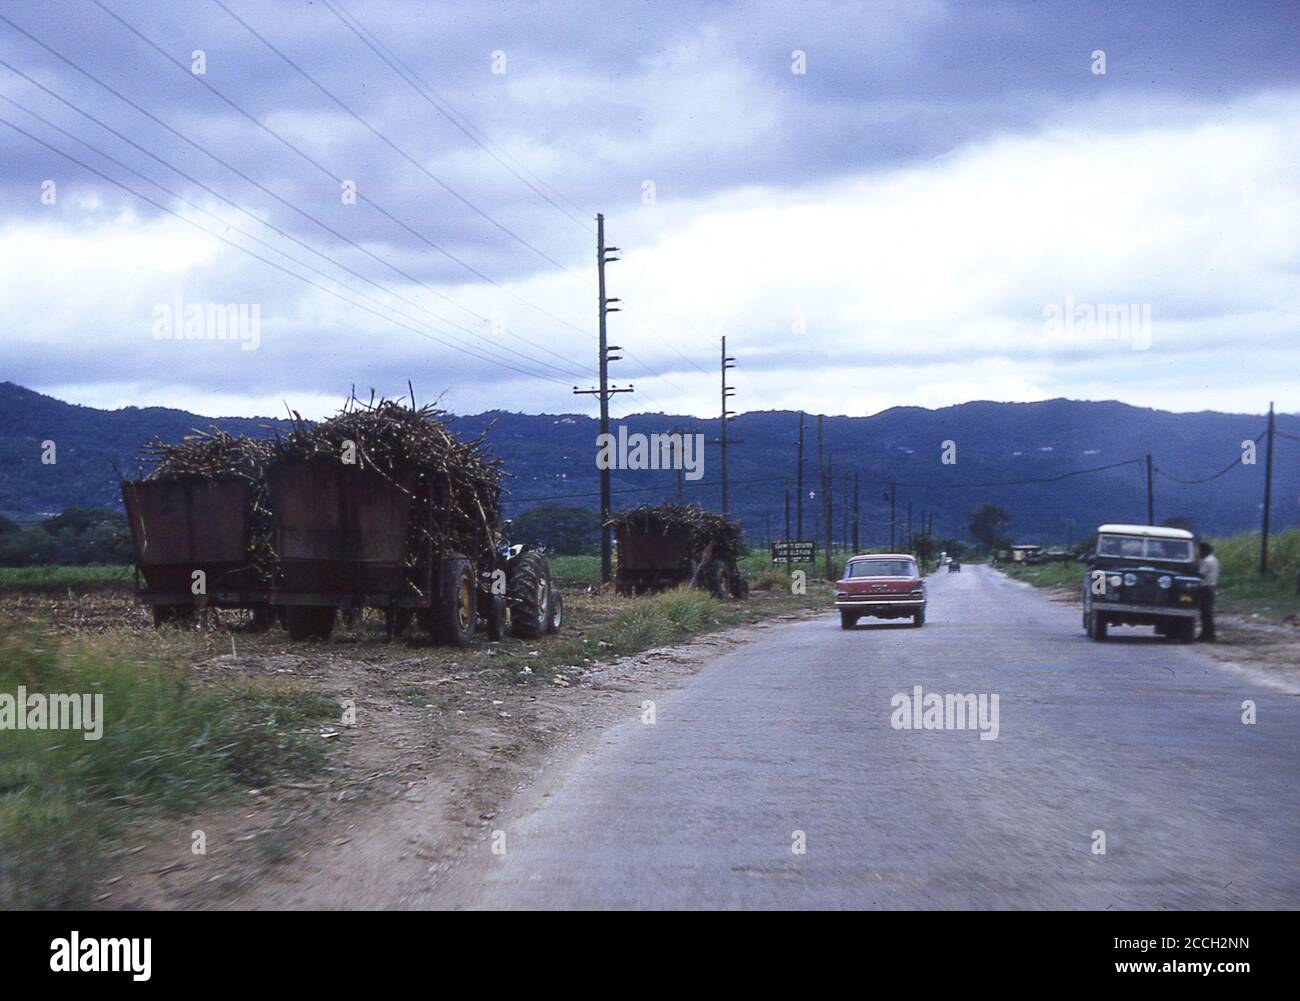 Ernte des Zuckerrohrs, Jamaika, 1970. Traktorwagen oder Waggons, die mit dem Erntegut gefüllt sind, stehen am Rand eines Feldes neben einer offenen Landstraße. Stockfoto